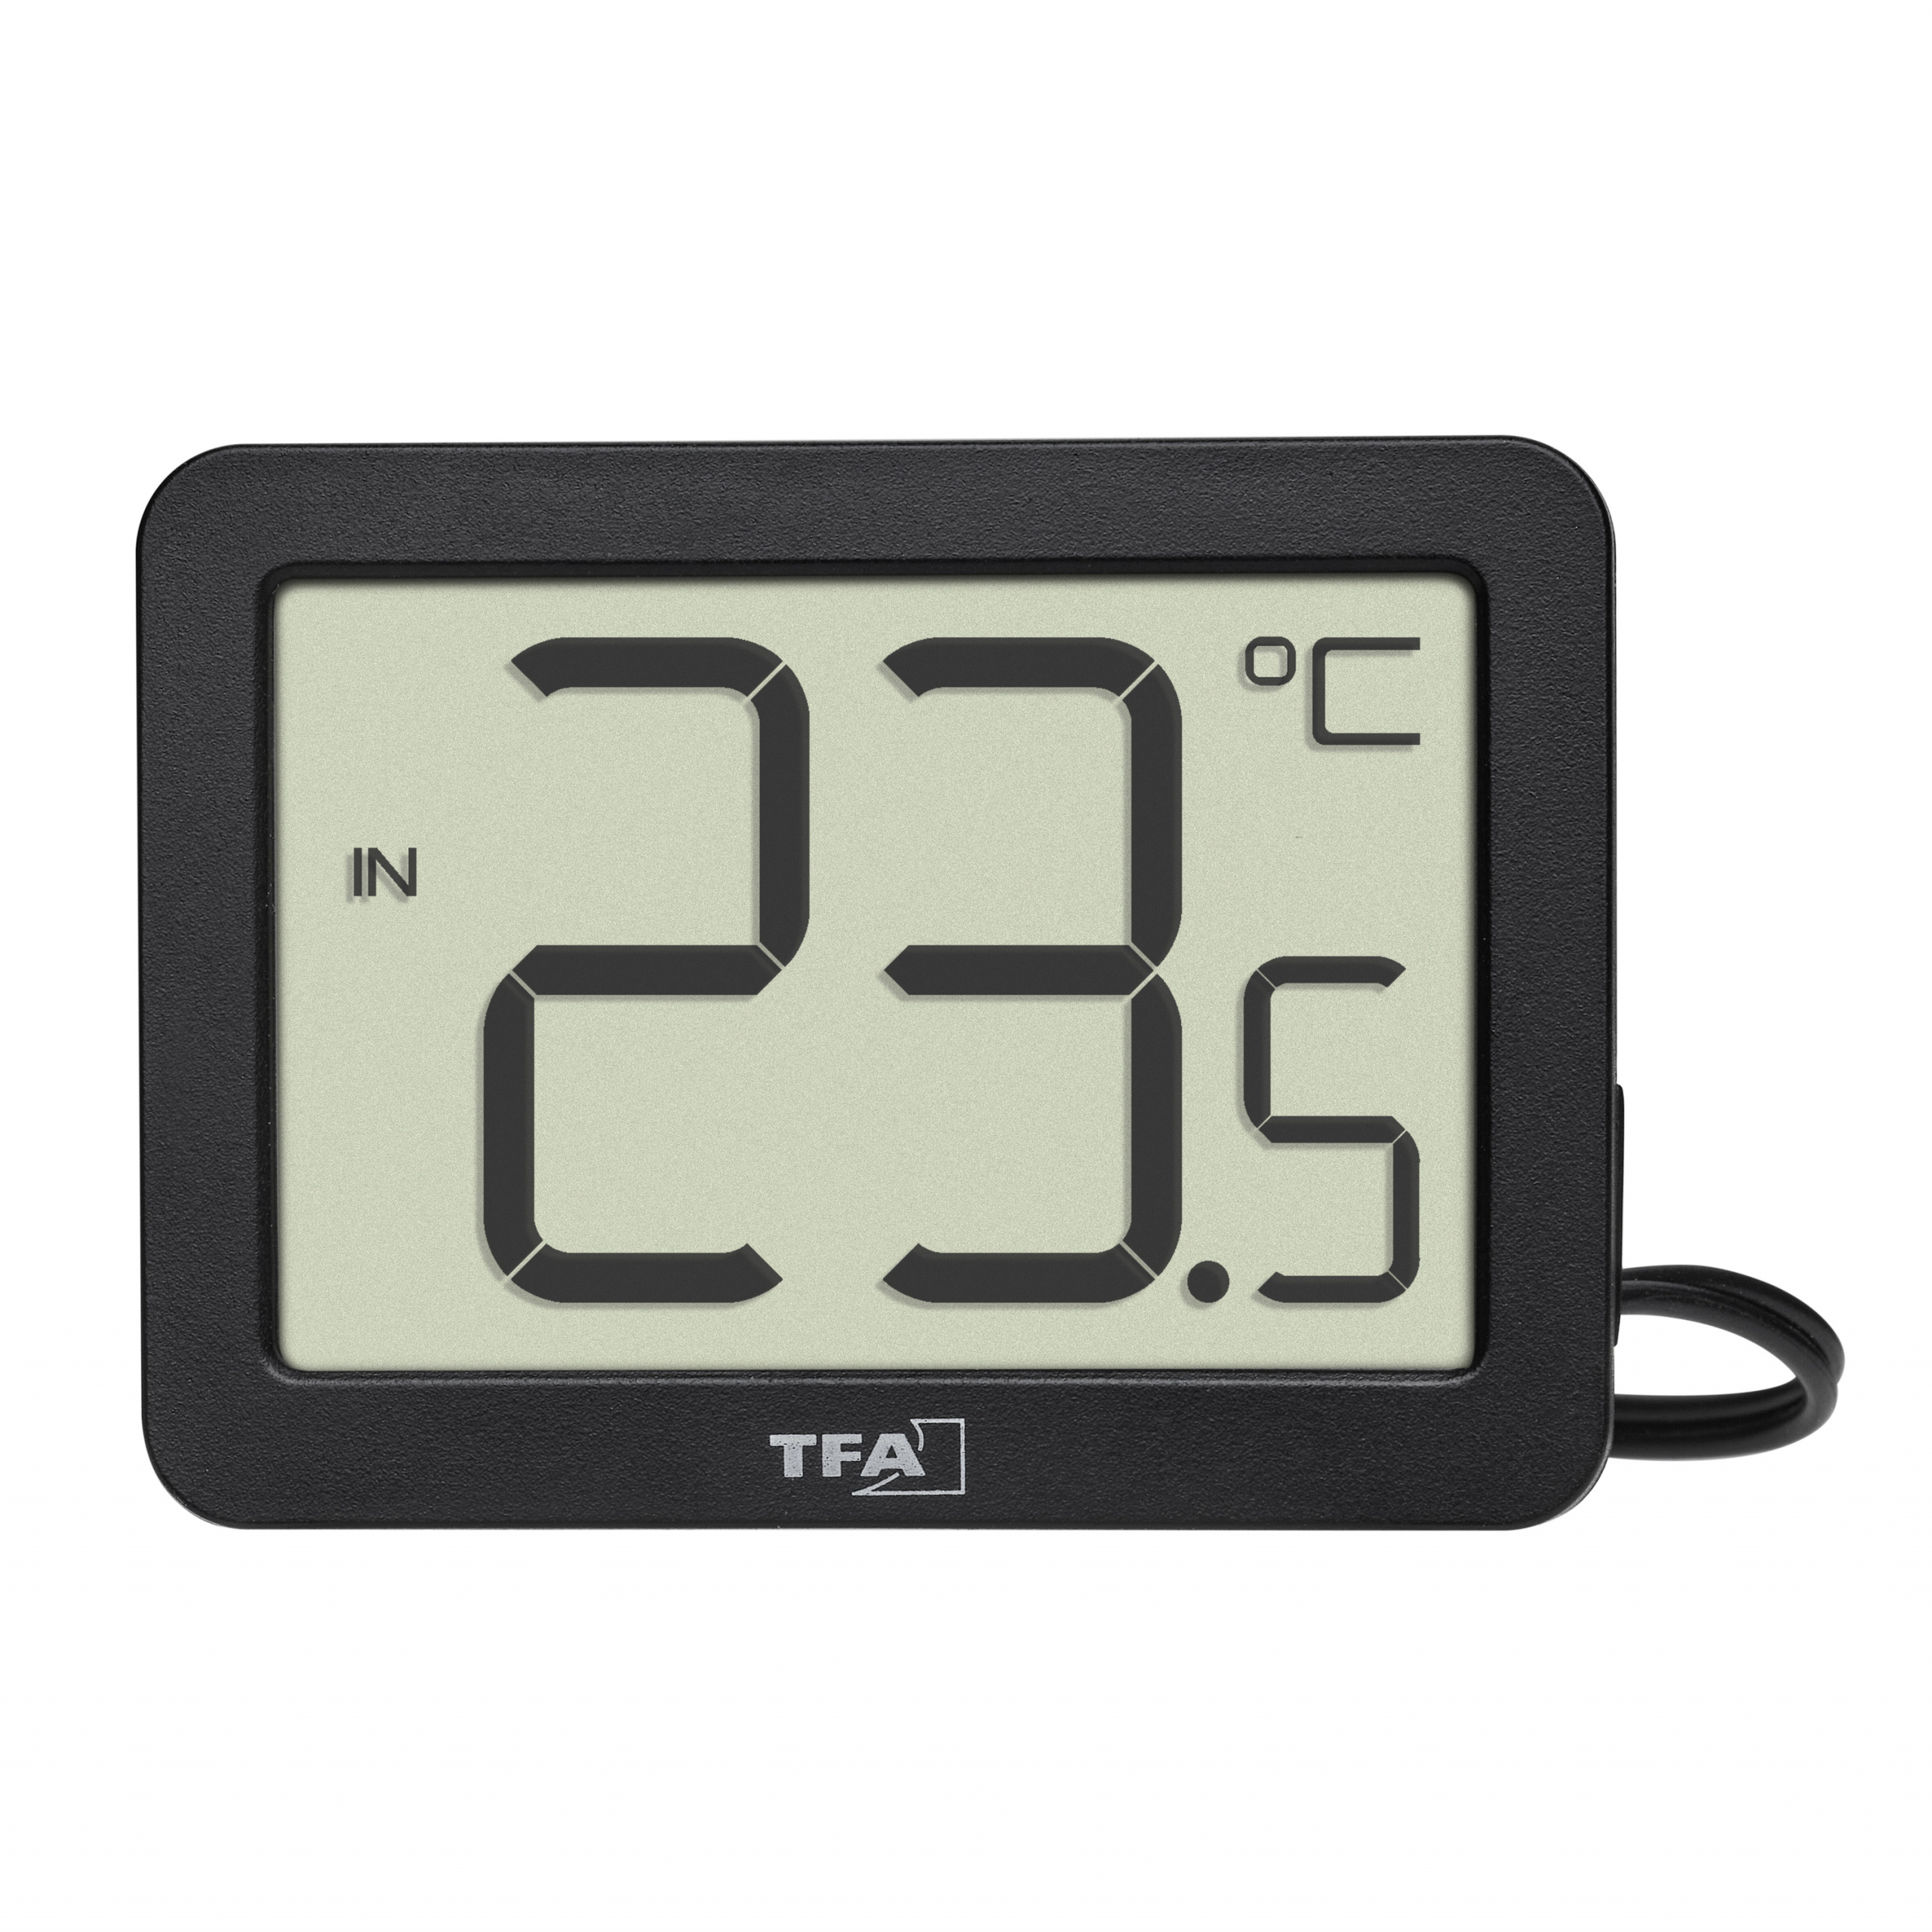 Digitales Thermometer für Innen